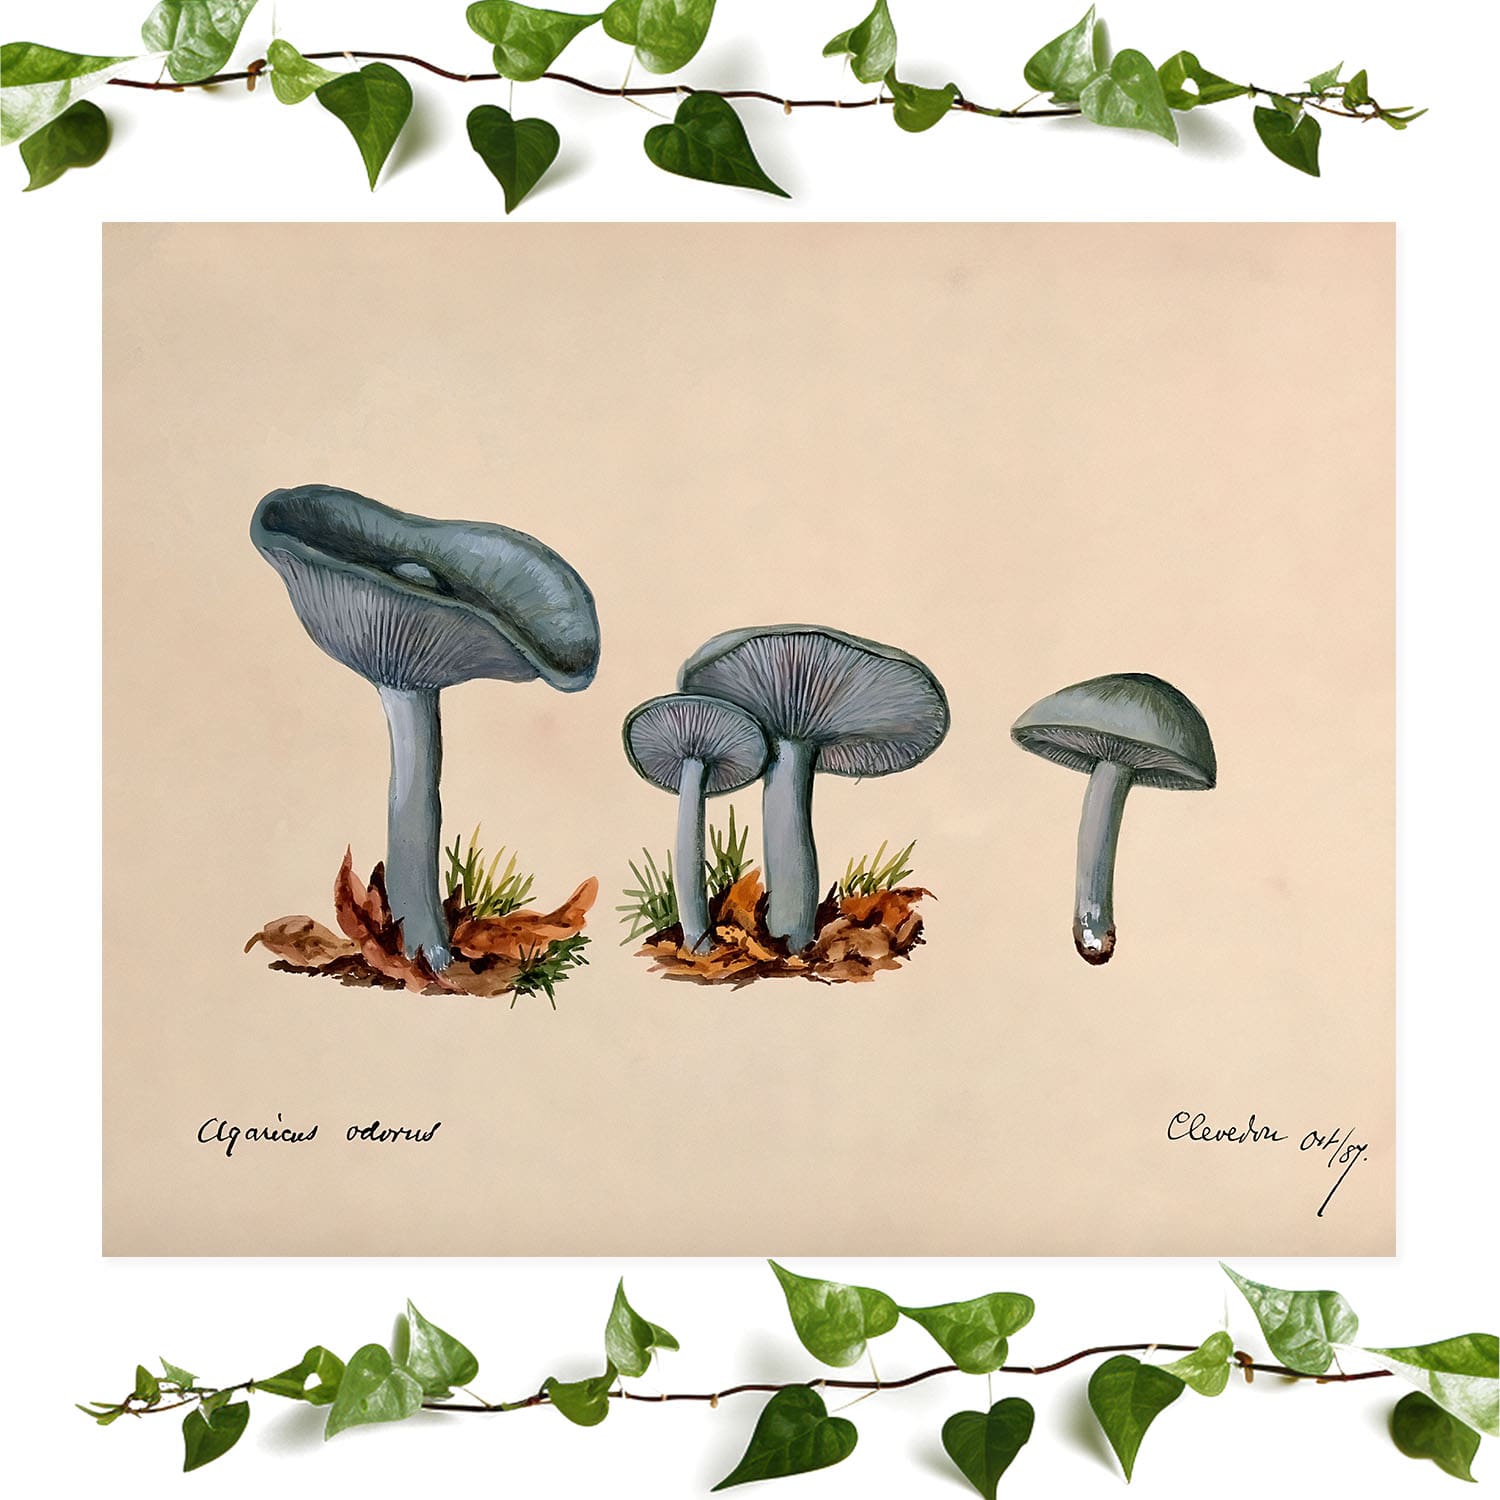 Little Blue Mushrooms art prints featuring a mushroom painting, vintage wall art room decor